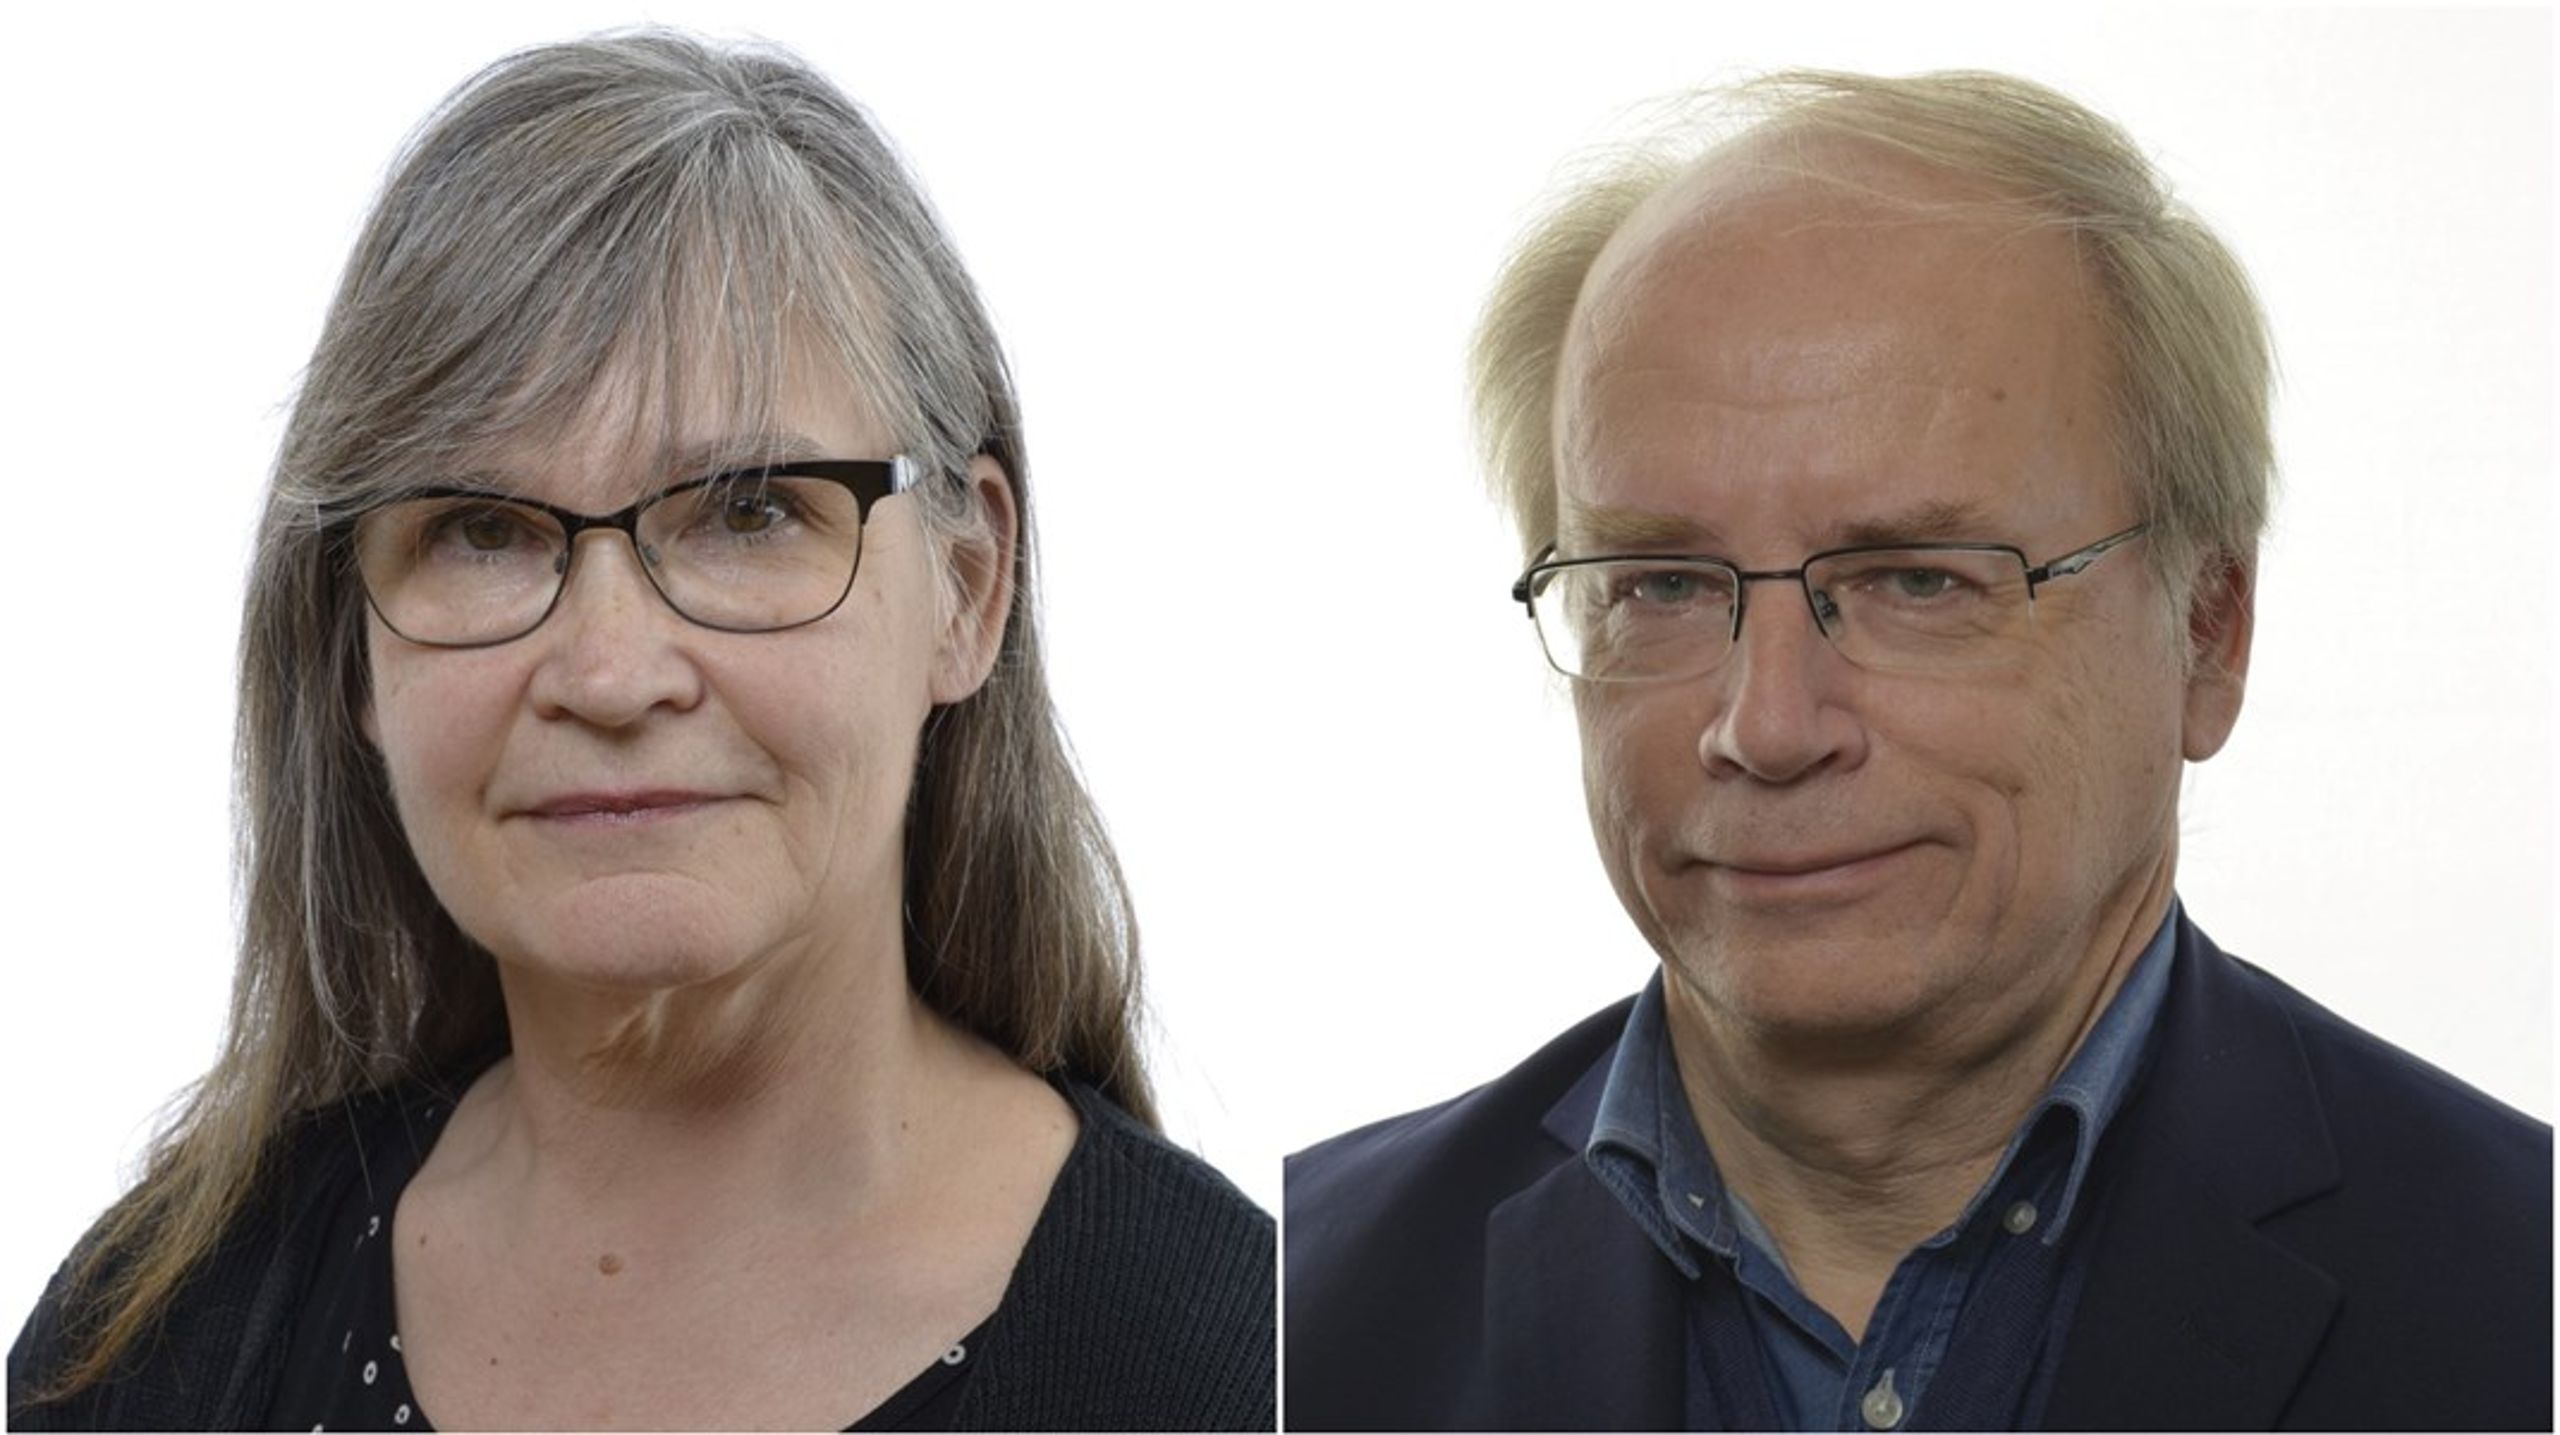 Annika Lillemets och Valter Mutt är besvikna på Vänsterpartiets fokus i klimatpolitiken.